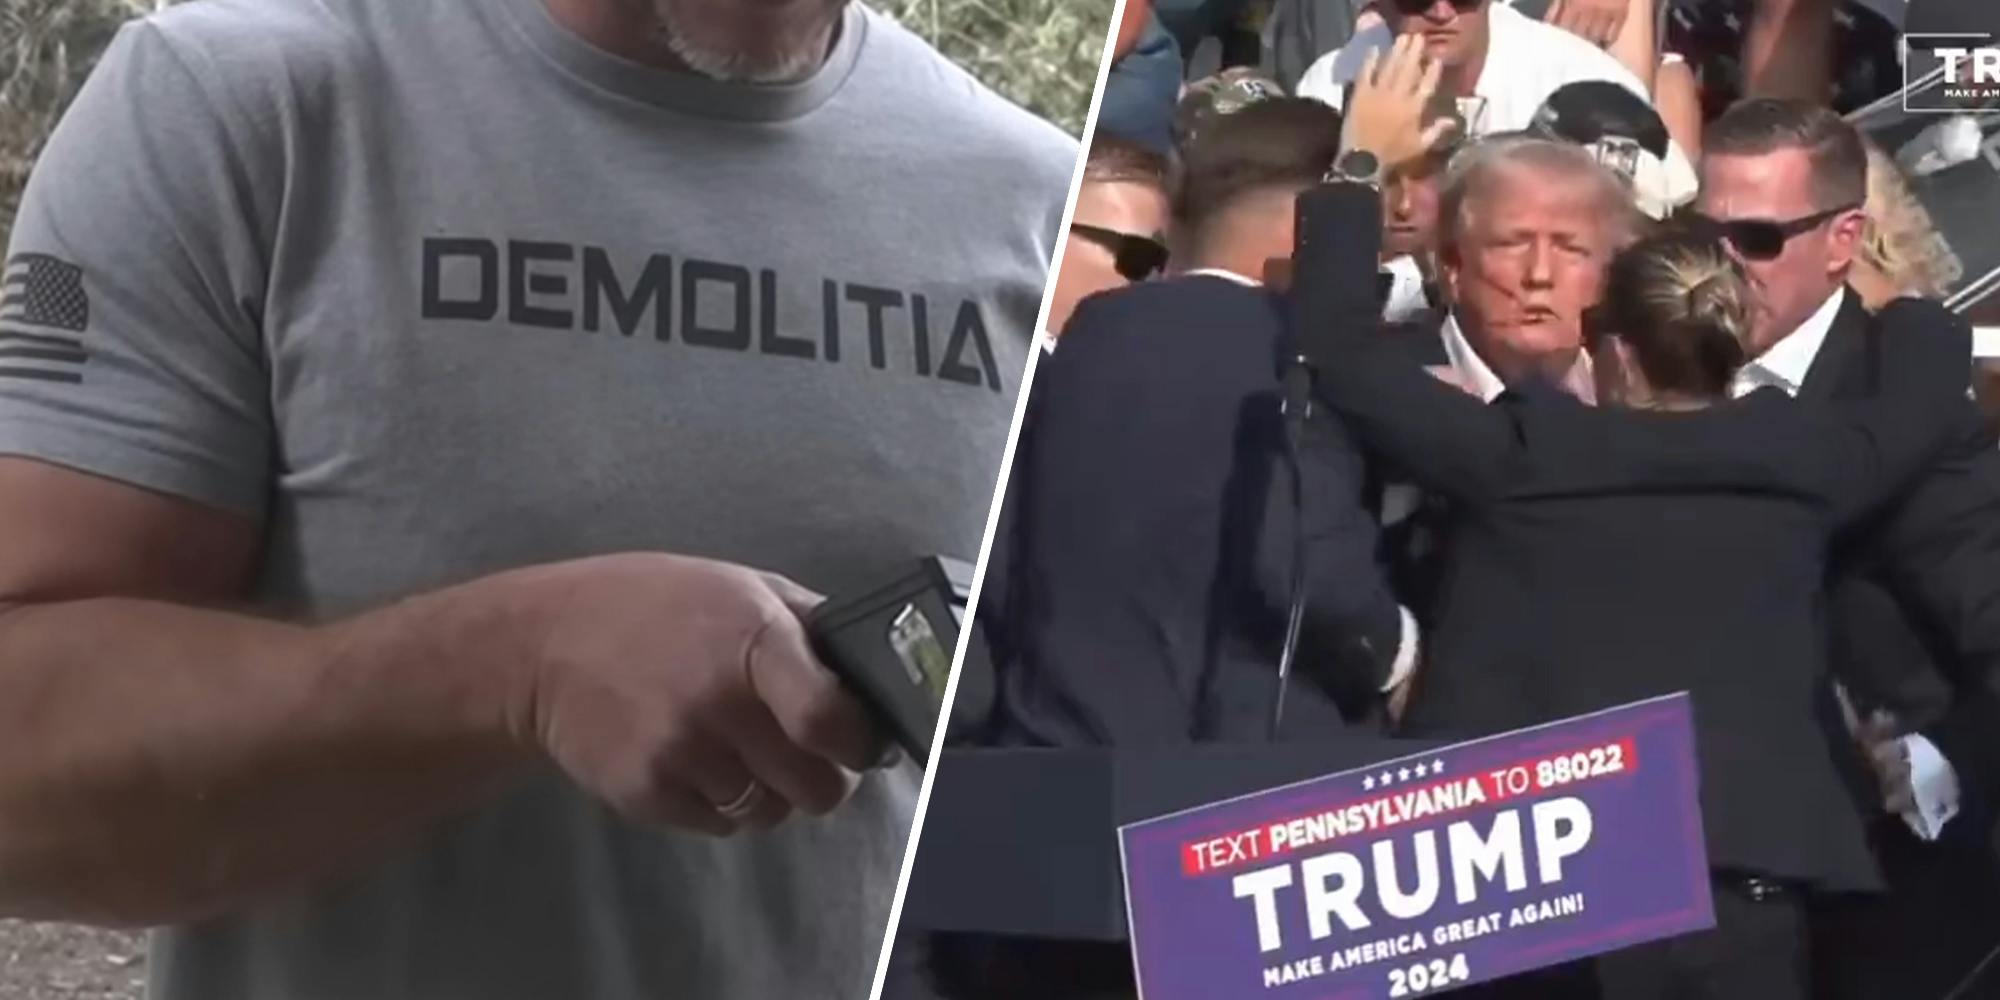 Popular gun youtuber responds after would-be Trump assassin seen wearing channel's shirt